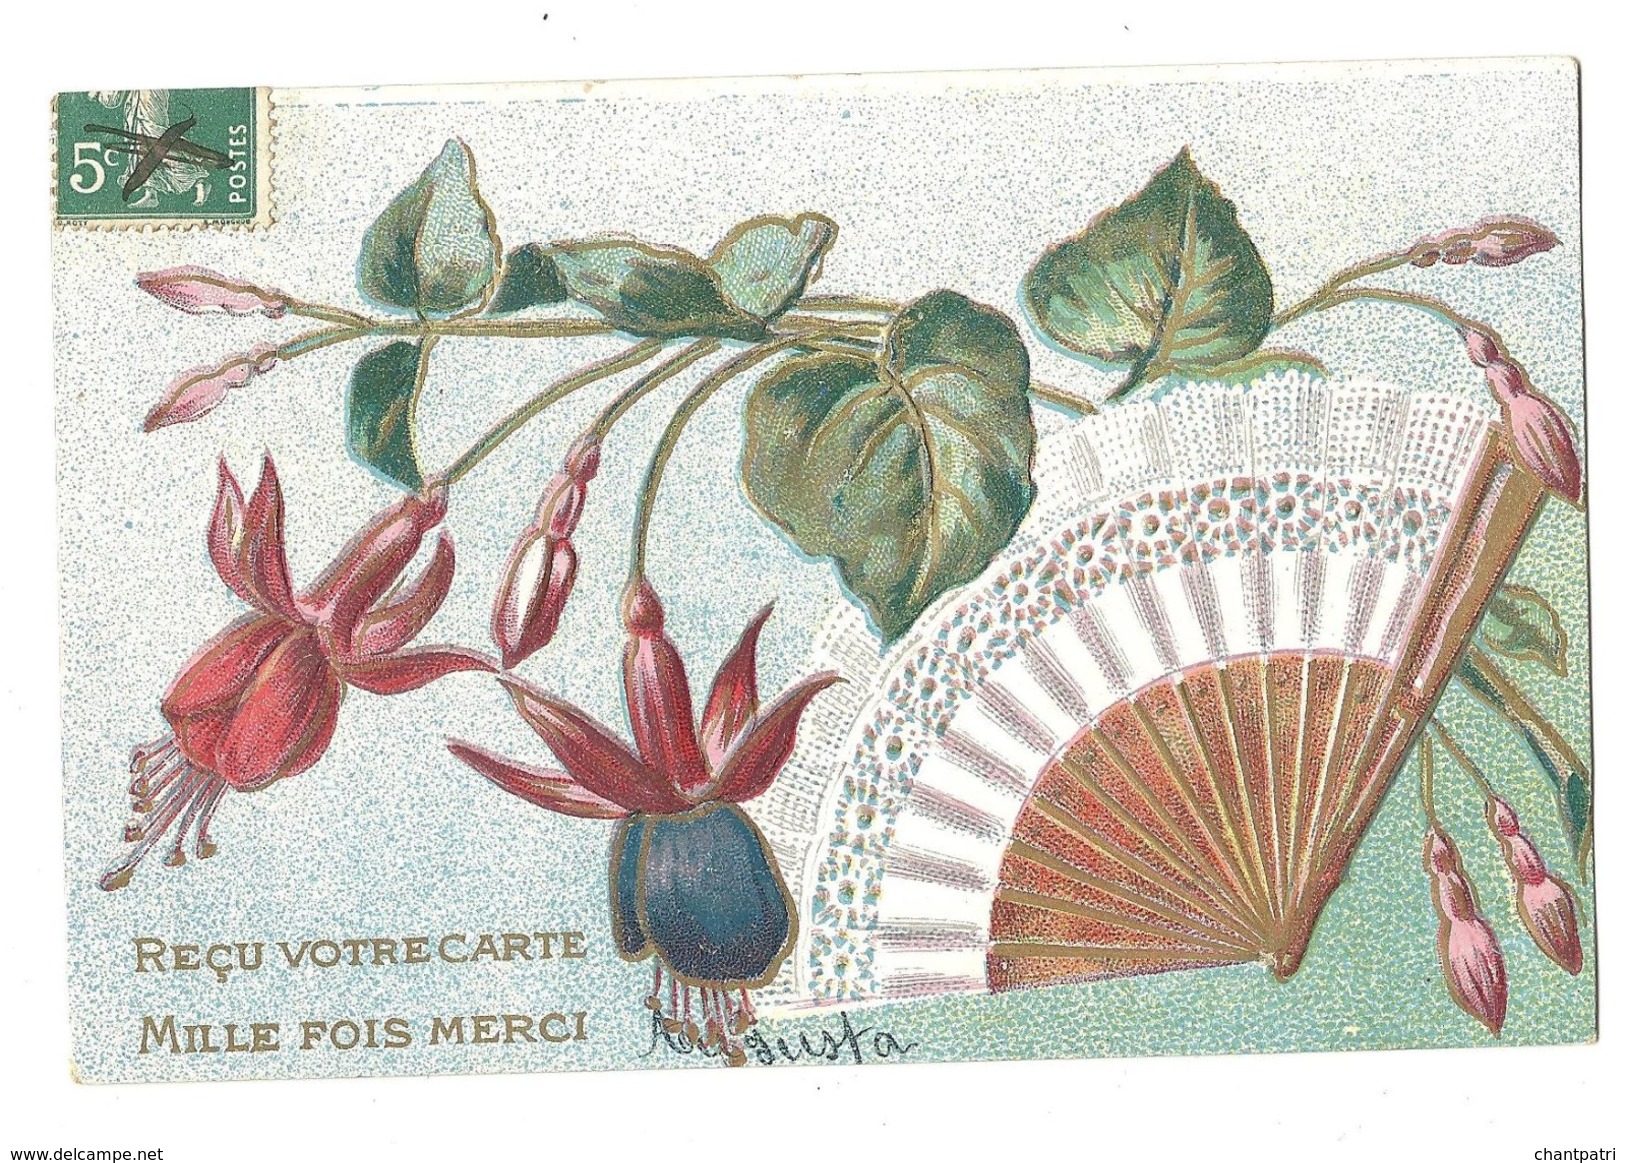 Reçu Votre Carte - Mille Fois Merci - Eventail Et Fuschia - Gauffrée - 1306 - Fleurs